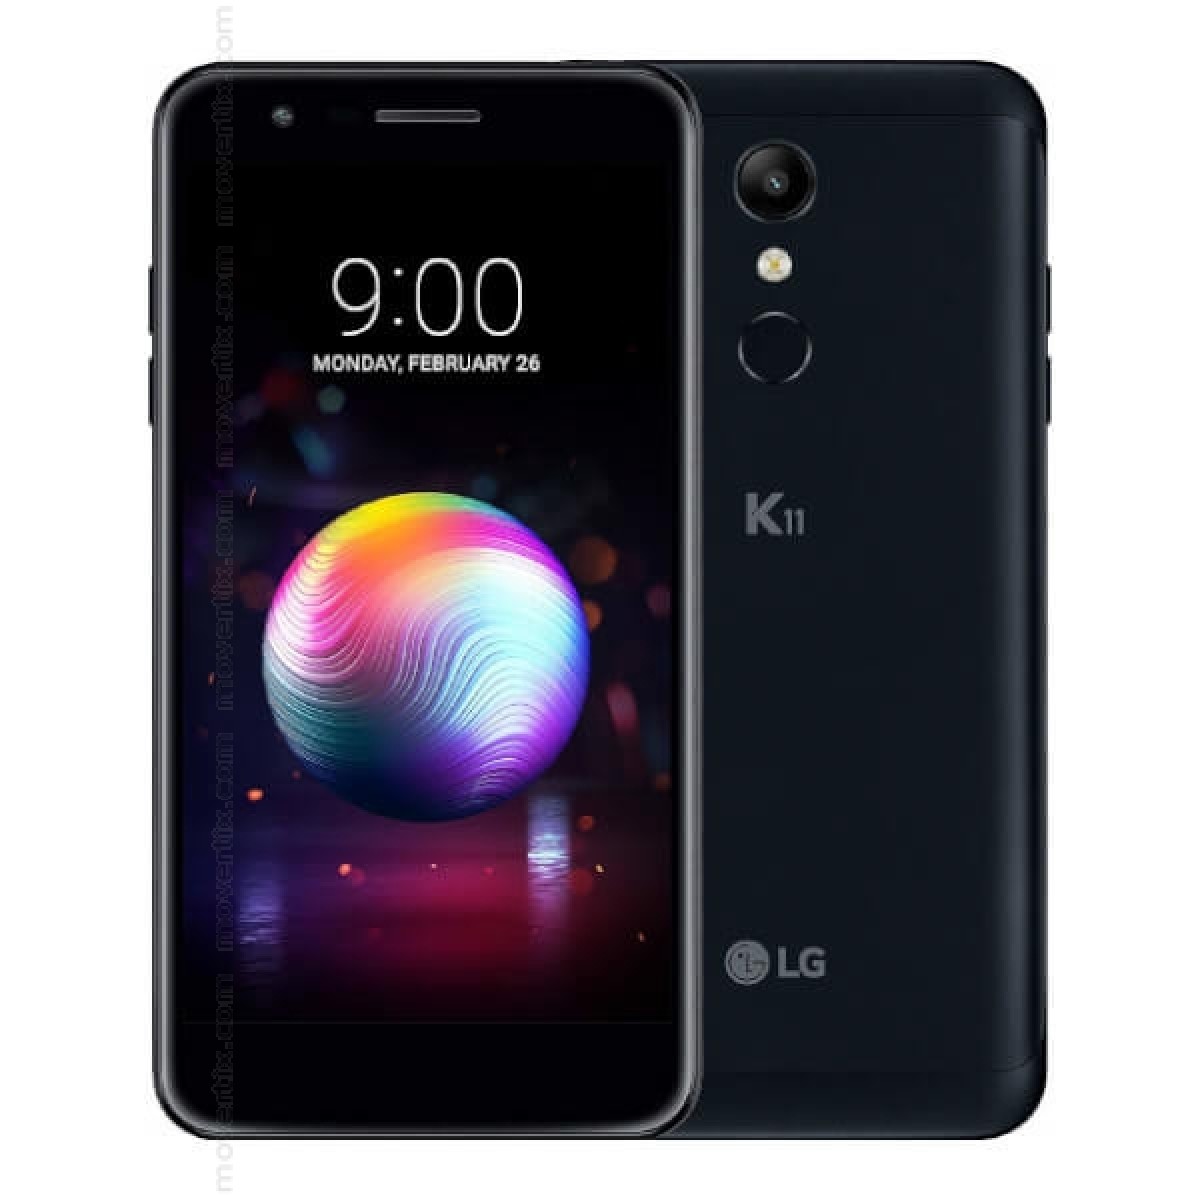 LG K11 16GB